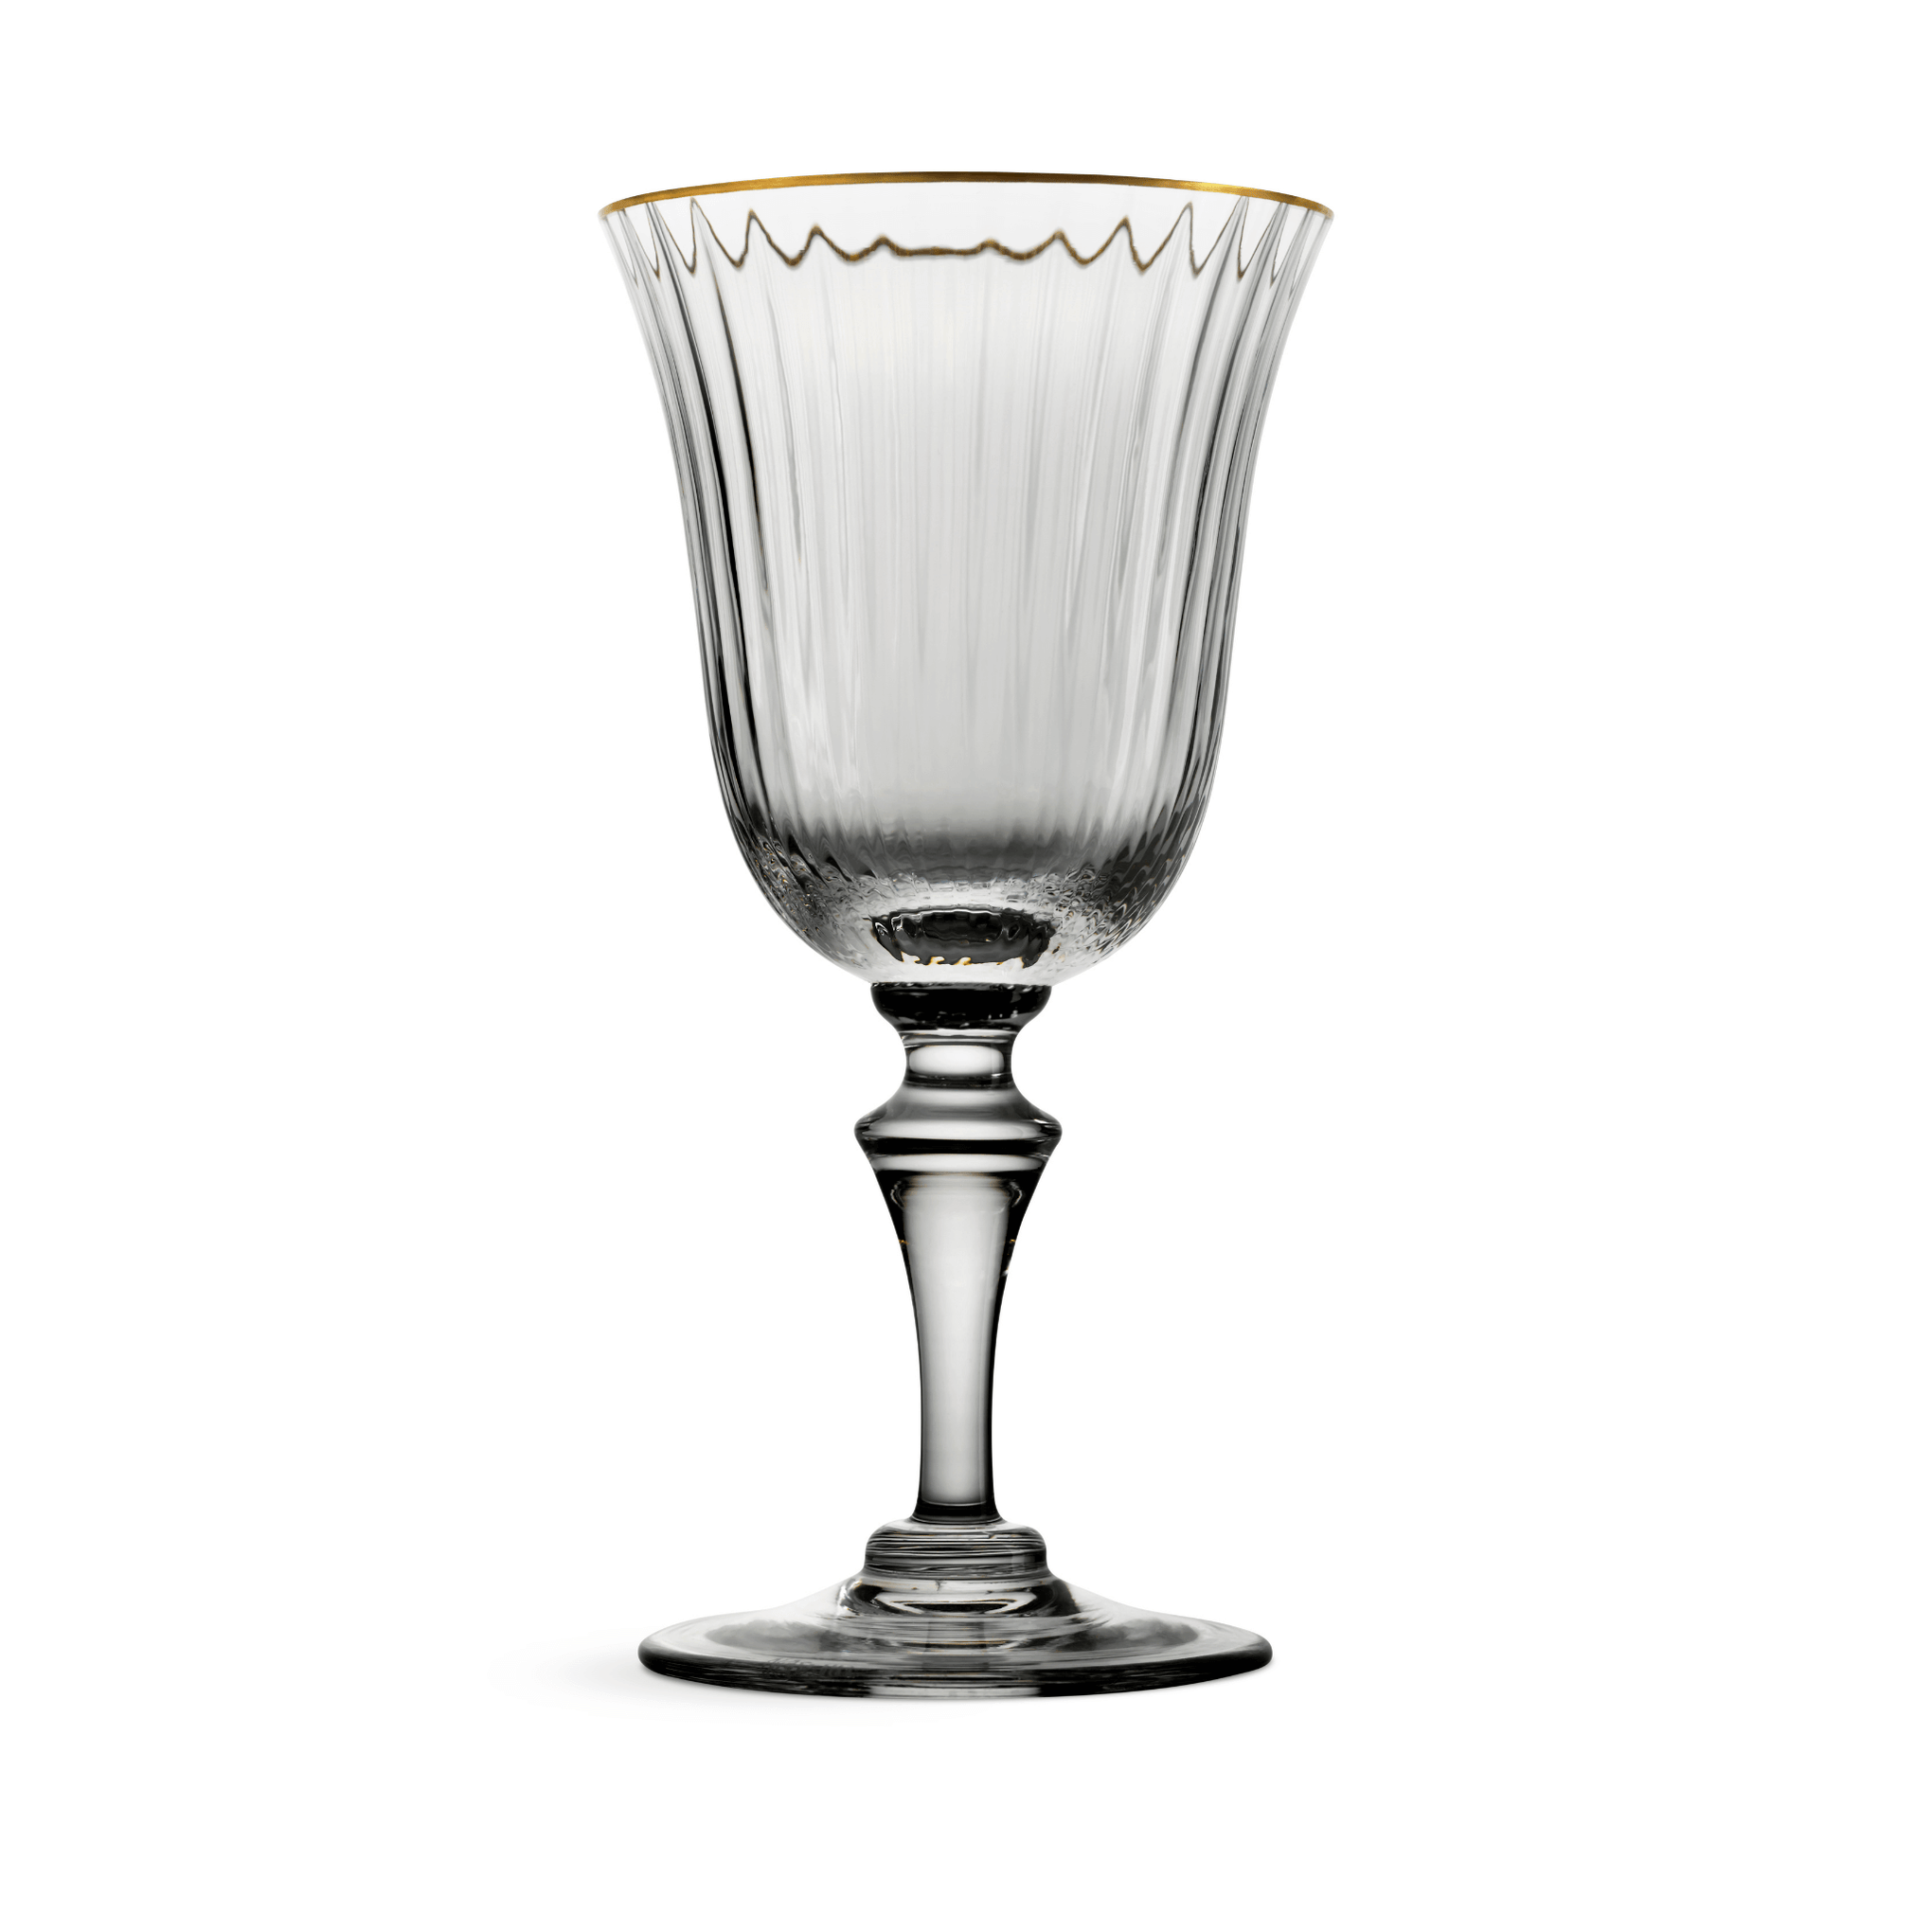 Nason Moretti 2/78 Murano White Wine Glass Gold Rim